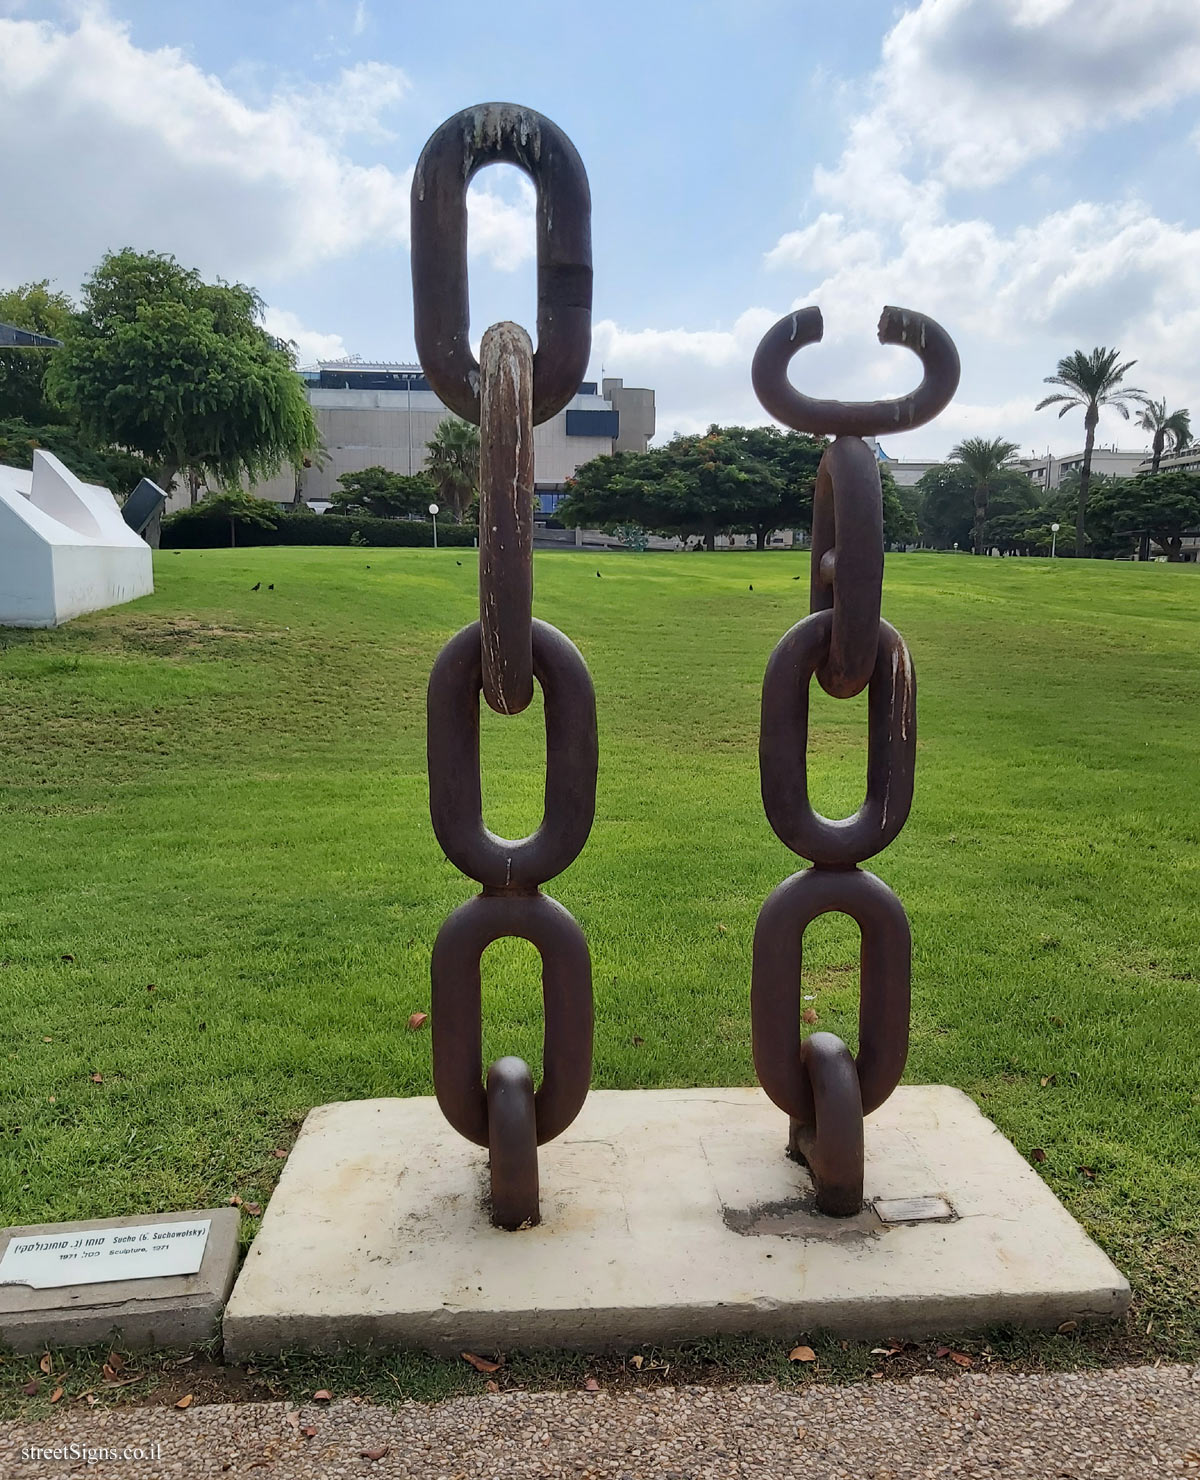 Tel Aviv - "Sculpture" - outdoor sculpture by Sucho (G. Suchowolsky) - Tel Aviv University-Ramat Aviv Campus, Tel Aviv, Israel